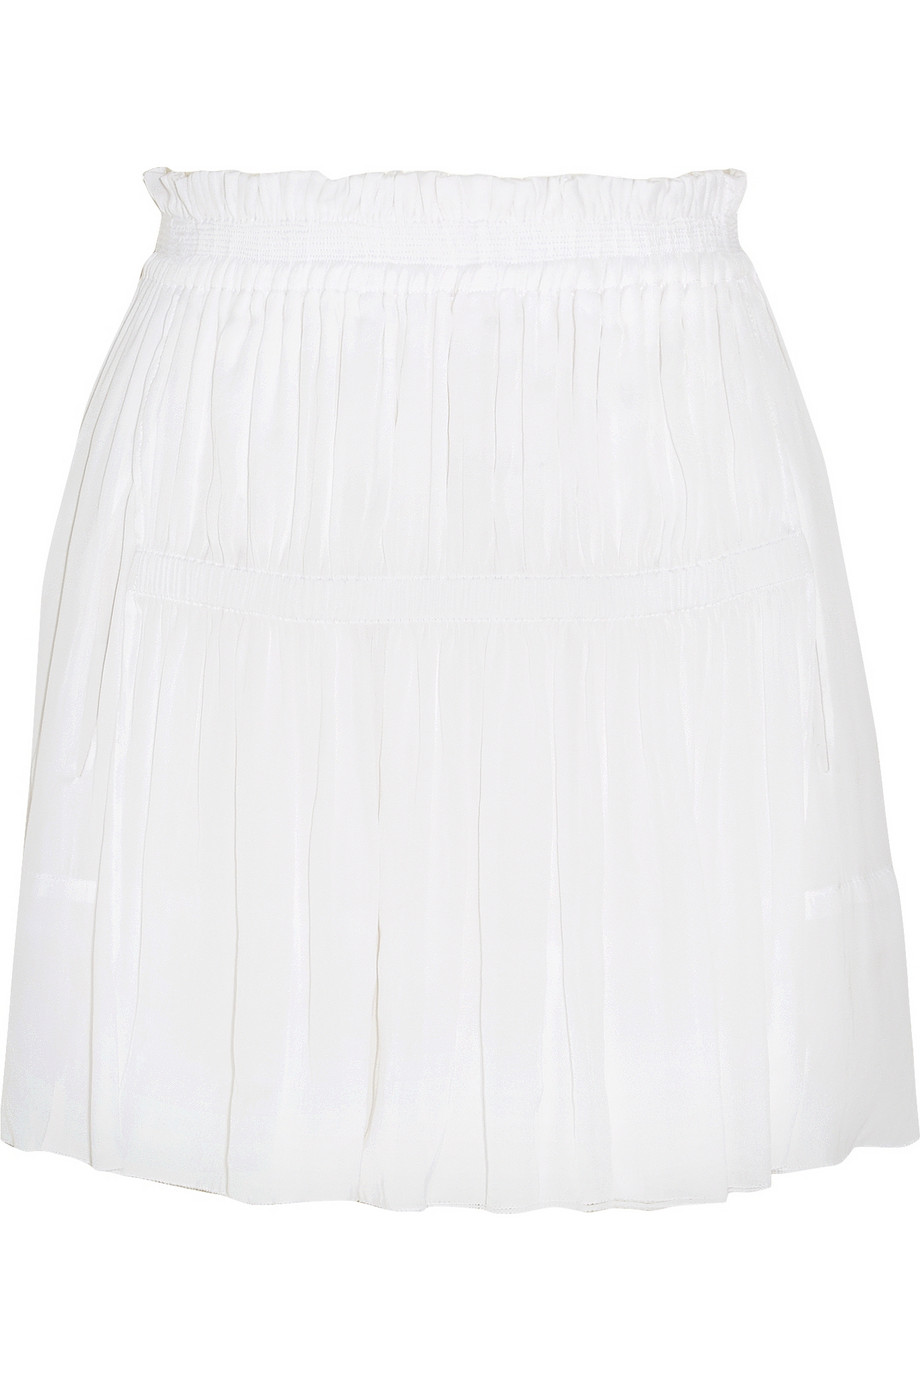 White Isabel Marant crepe skirt